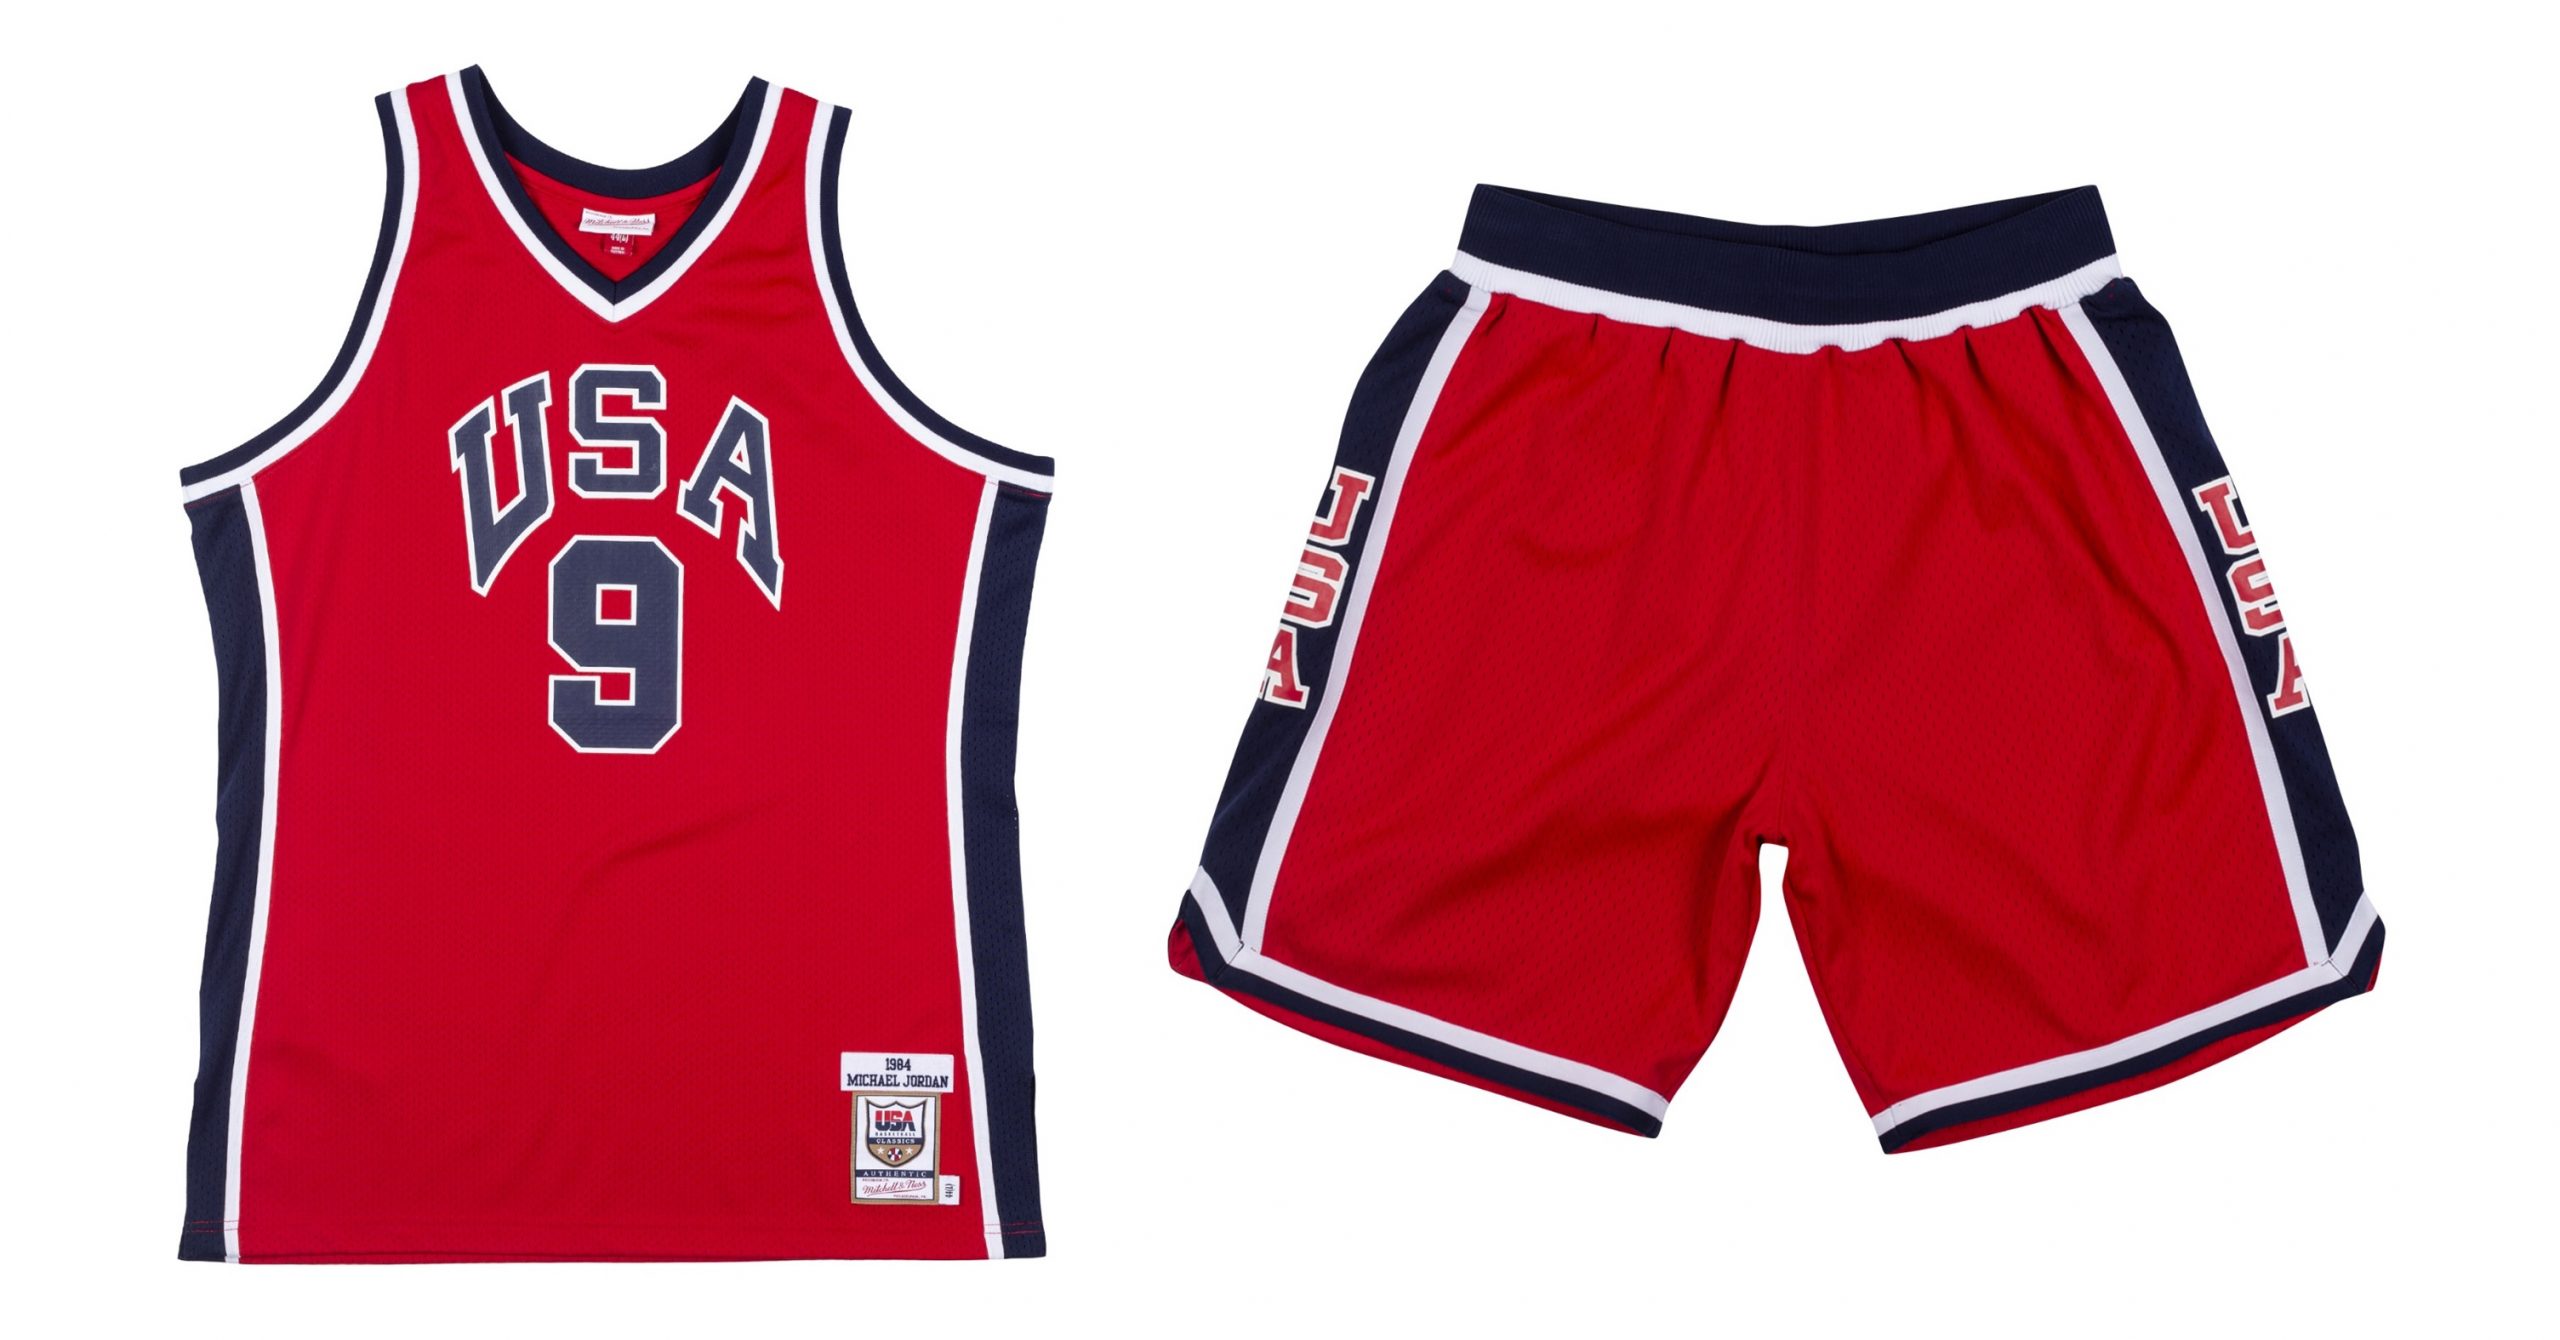 NBA Store Taiwan 推出Michael Jordan 